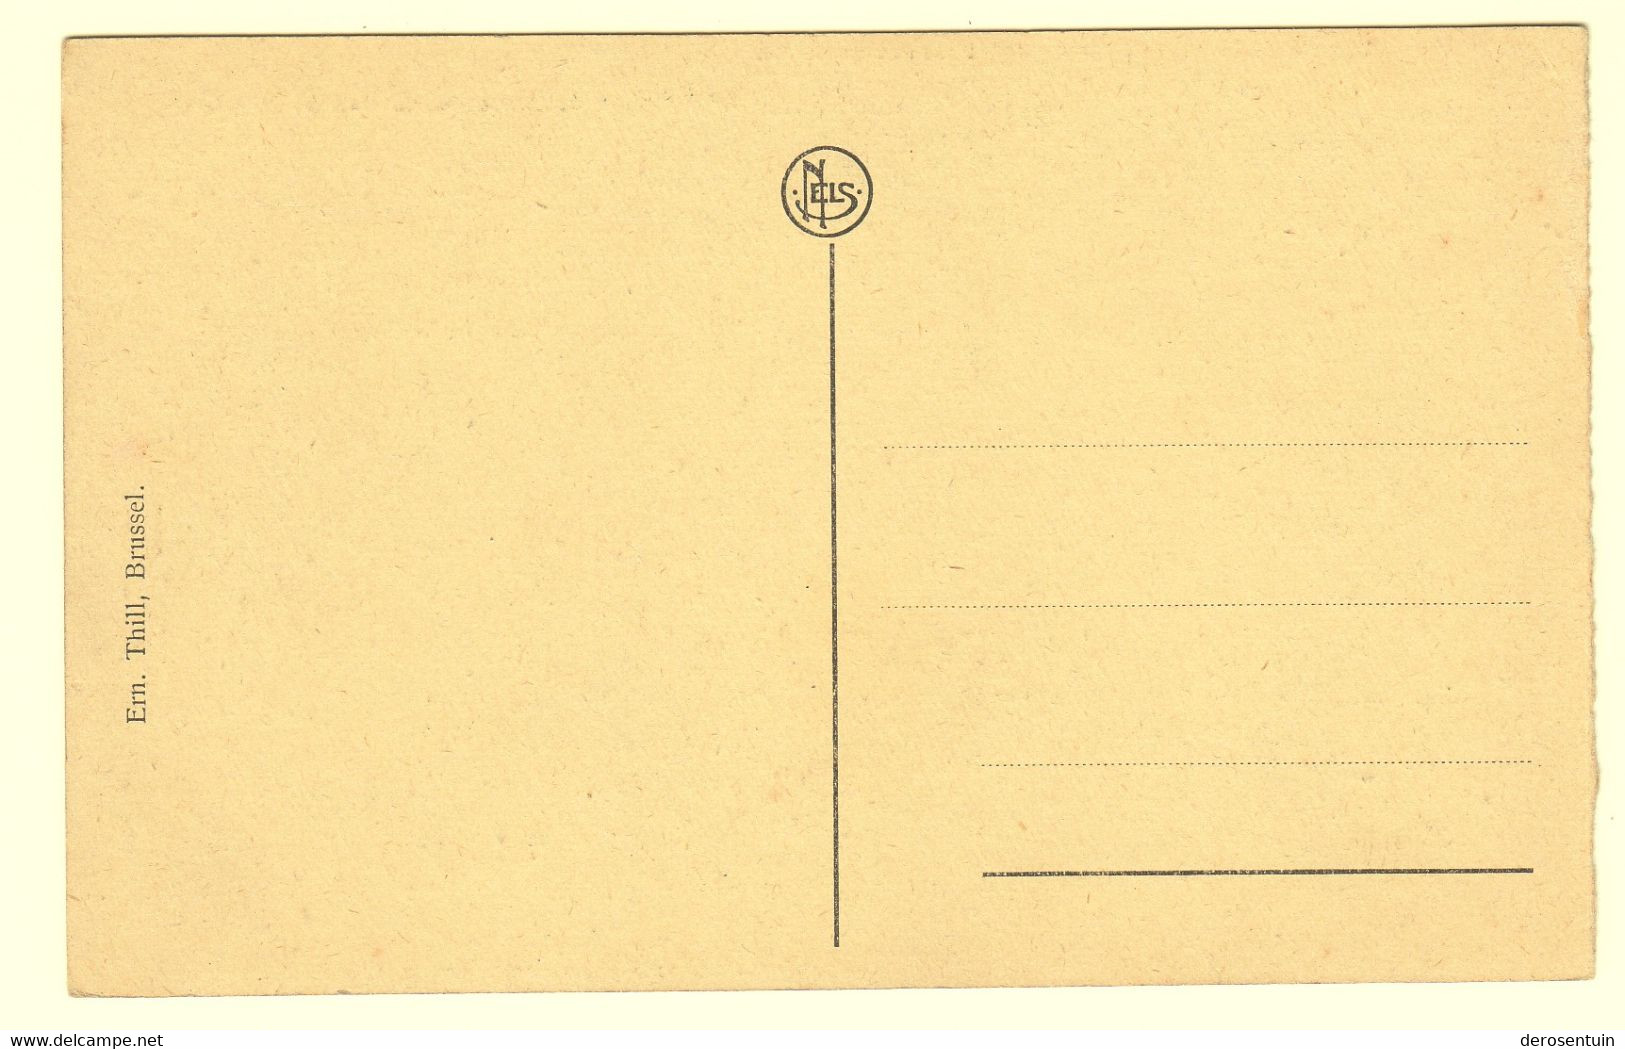 a0023	[Postkaarten] Gent (gemengd lot, varia). - Lot van 60 postkaarten, klein formaat, diverse periodes